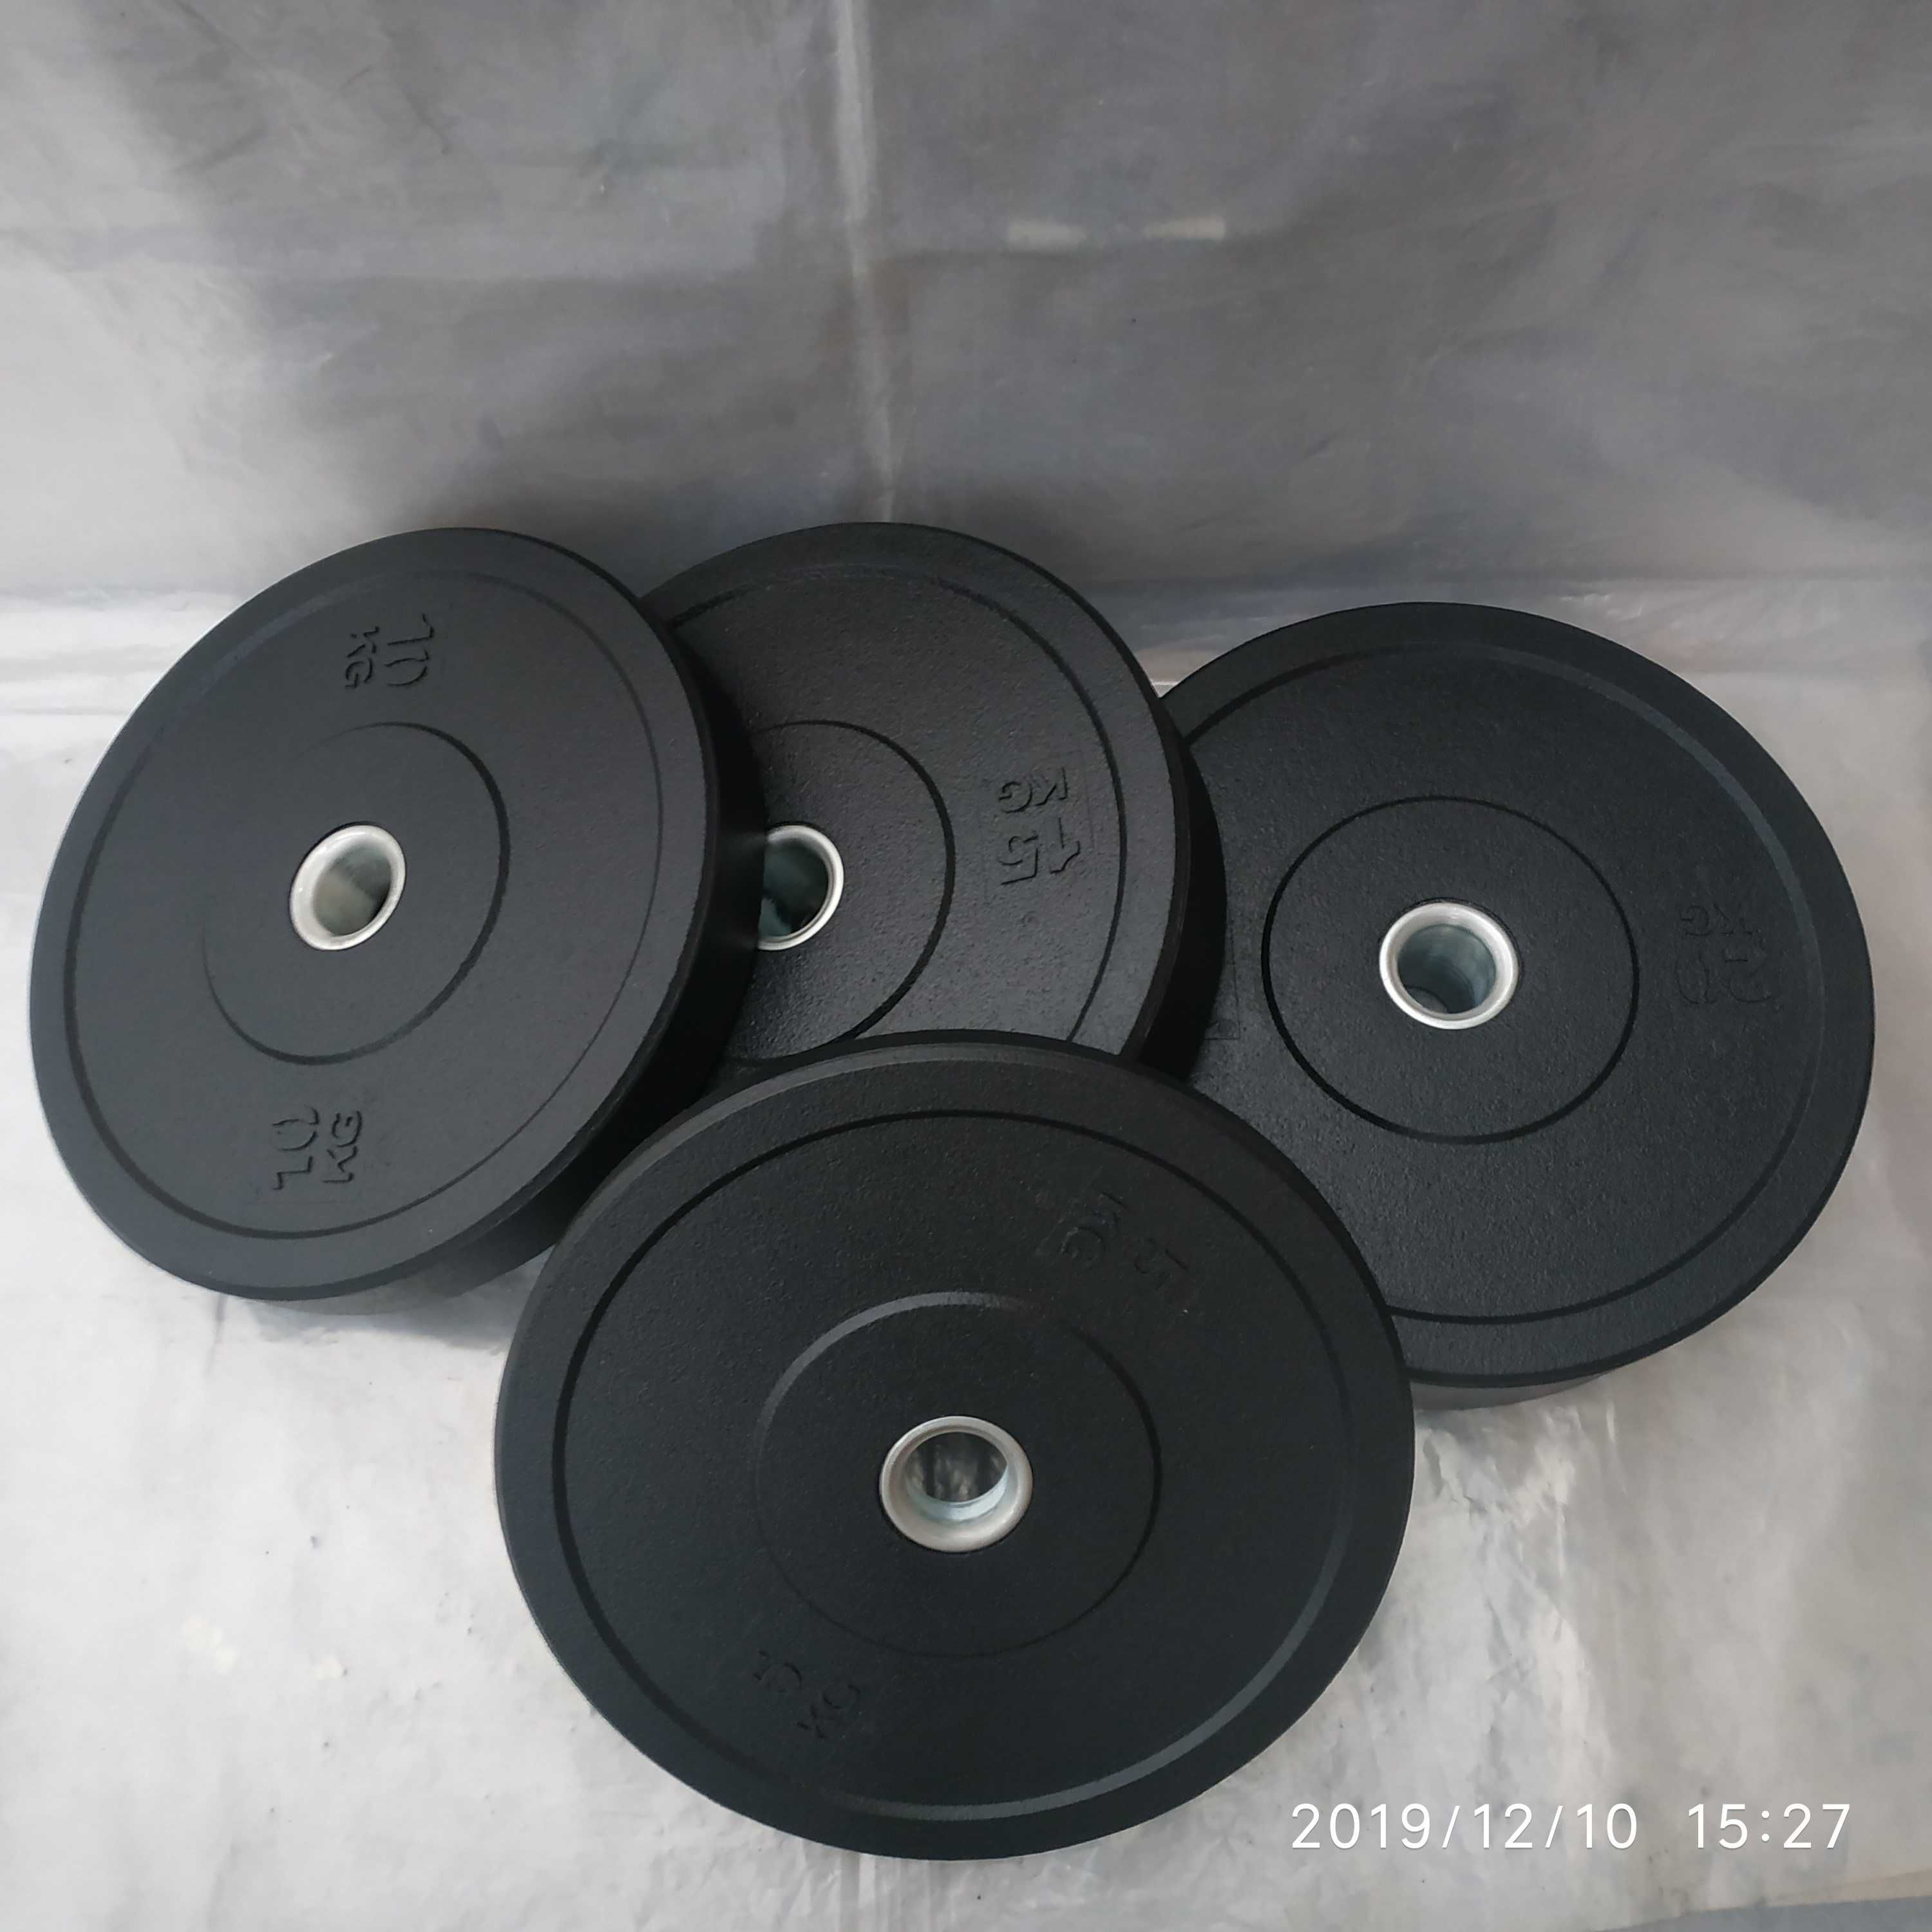 100 кг набор блинов обрезиненных (дисков)